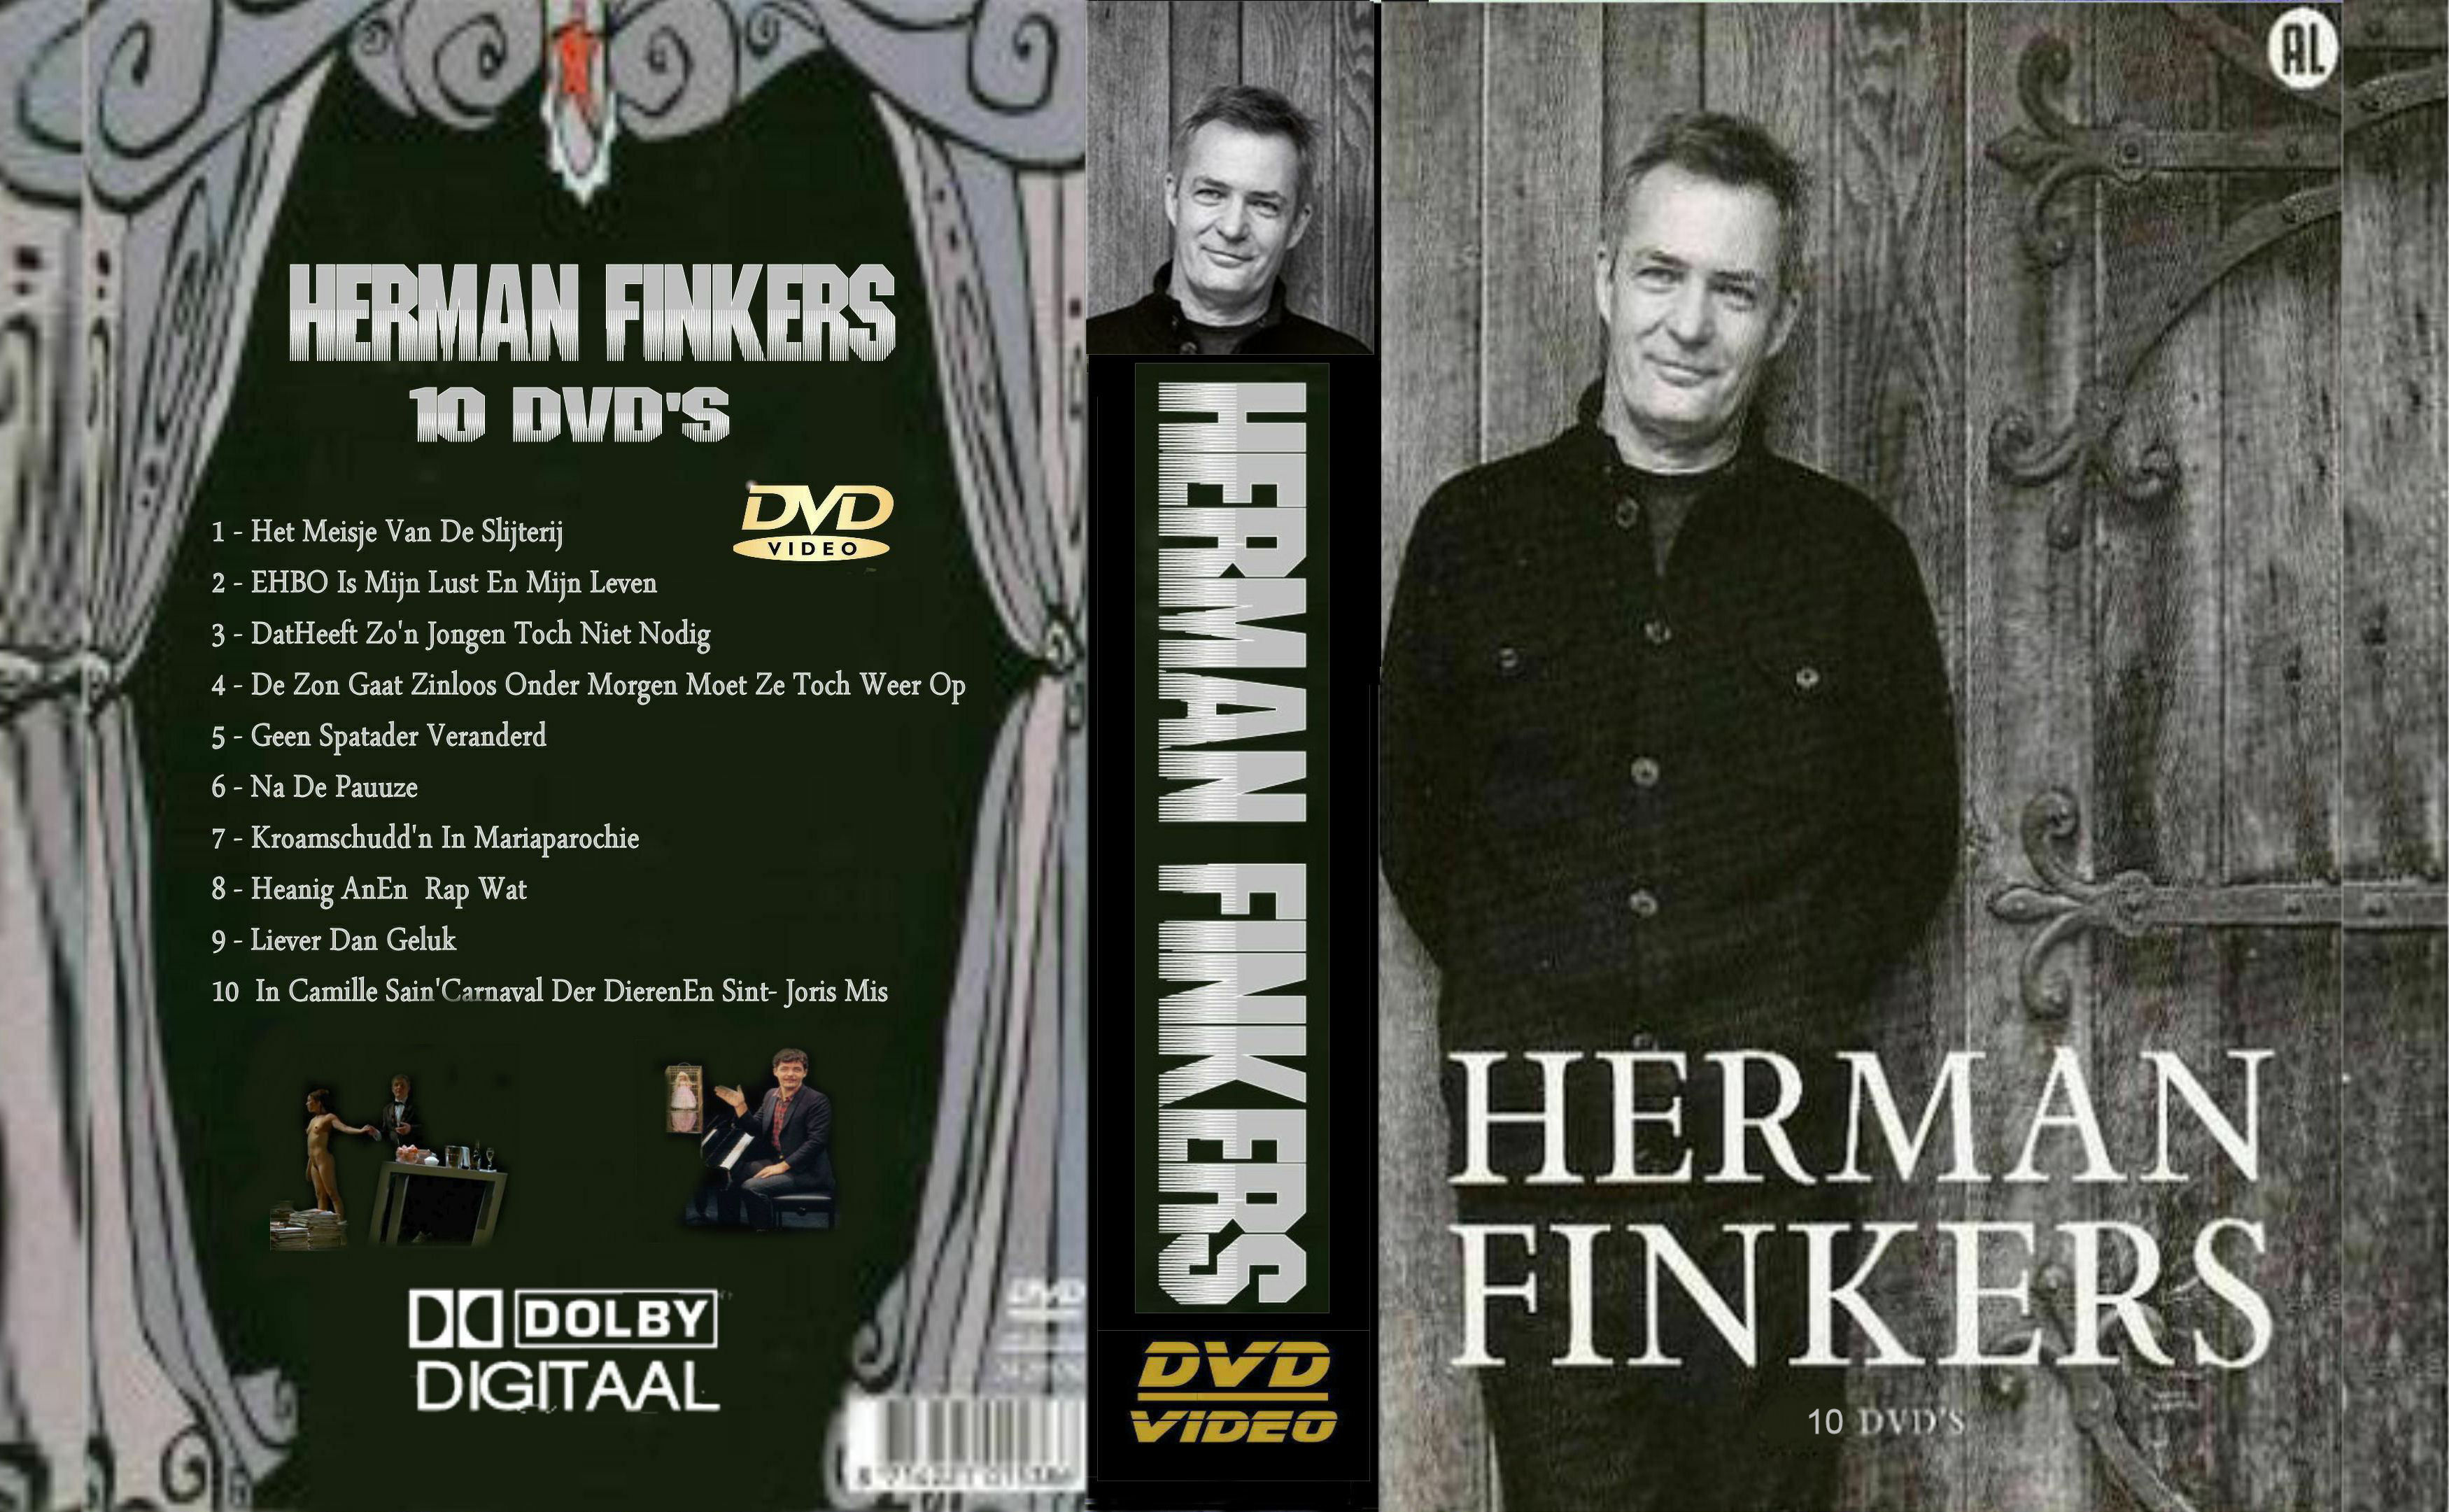 Herman Finkers Collectie DvD 5